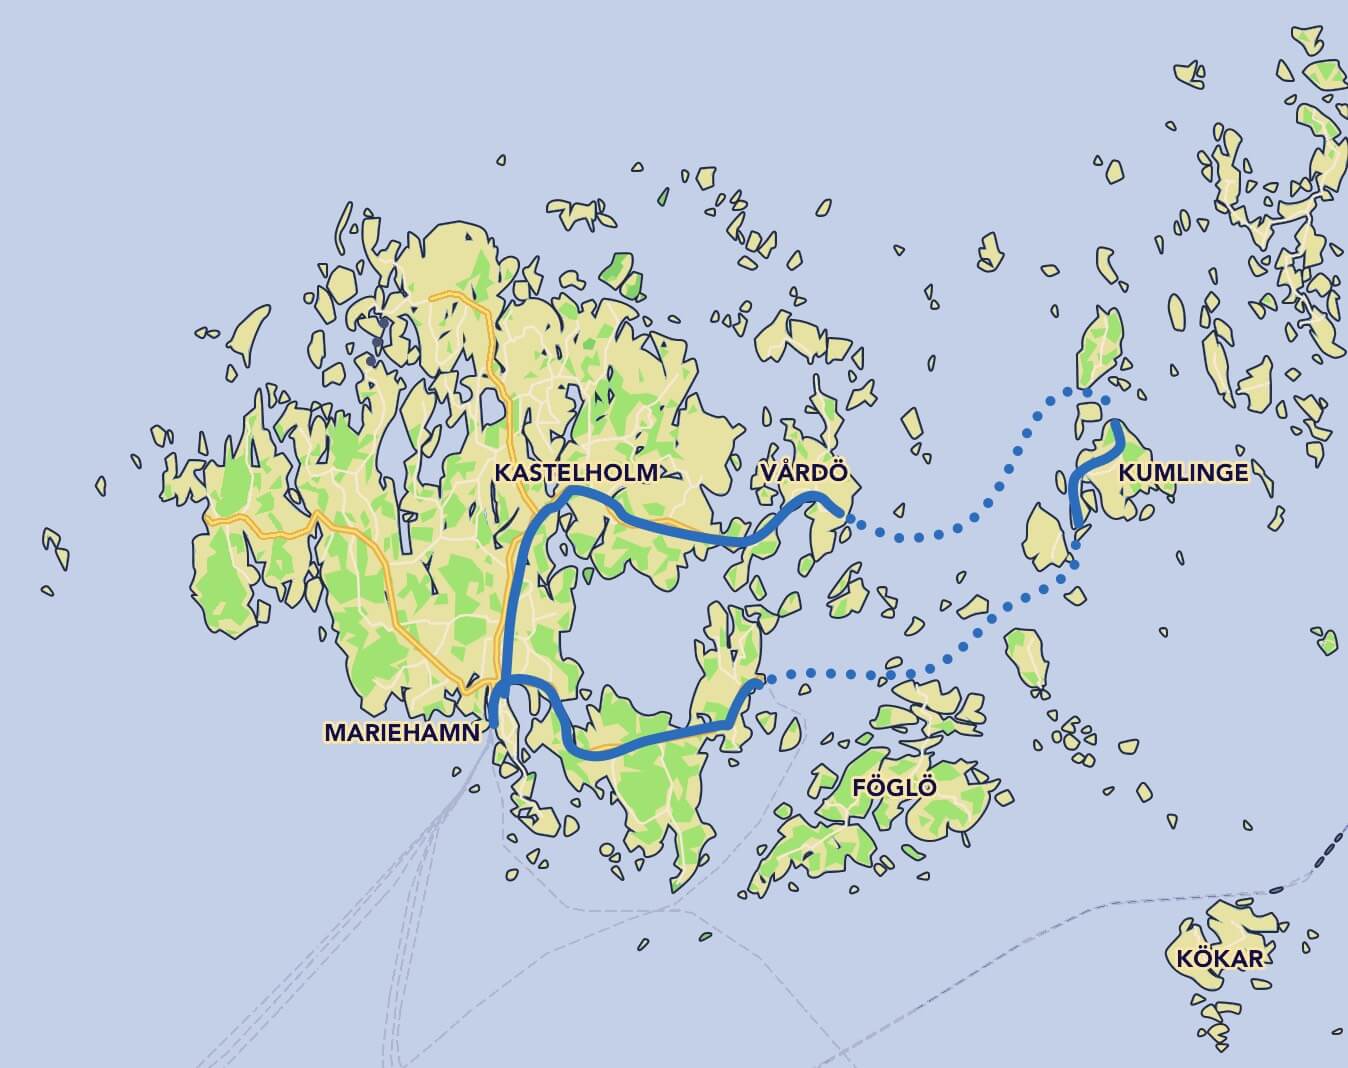 Small archipelago bicyle tour map